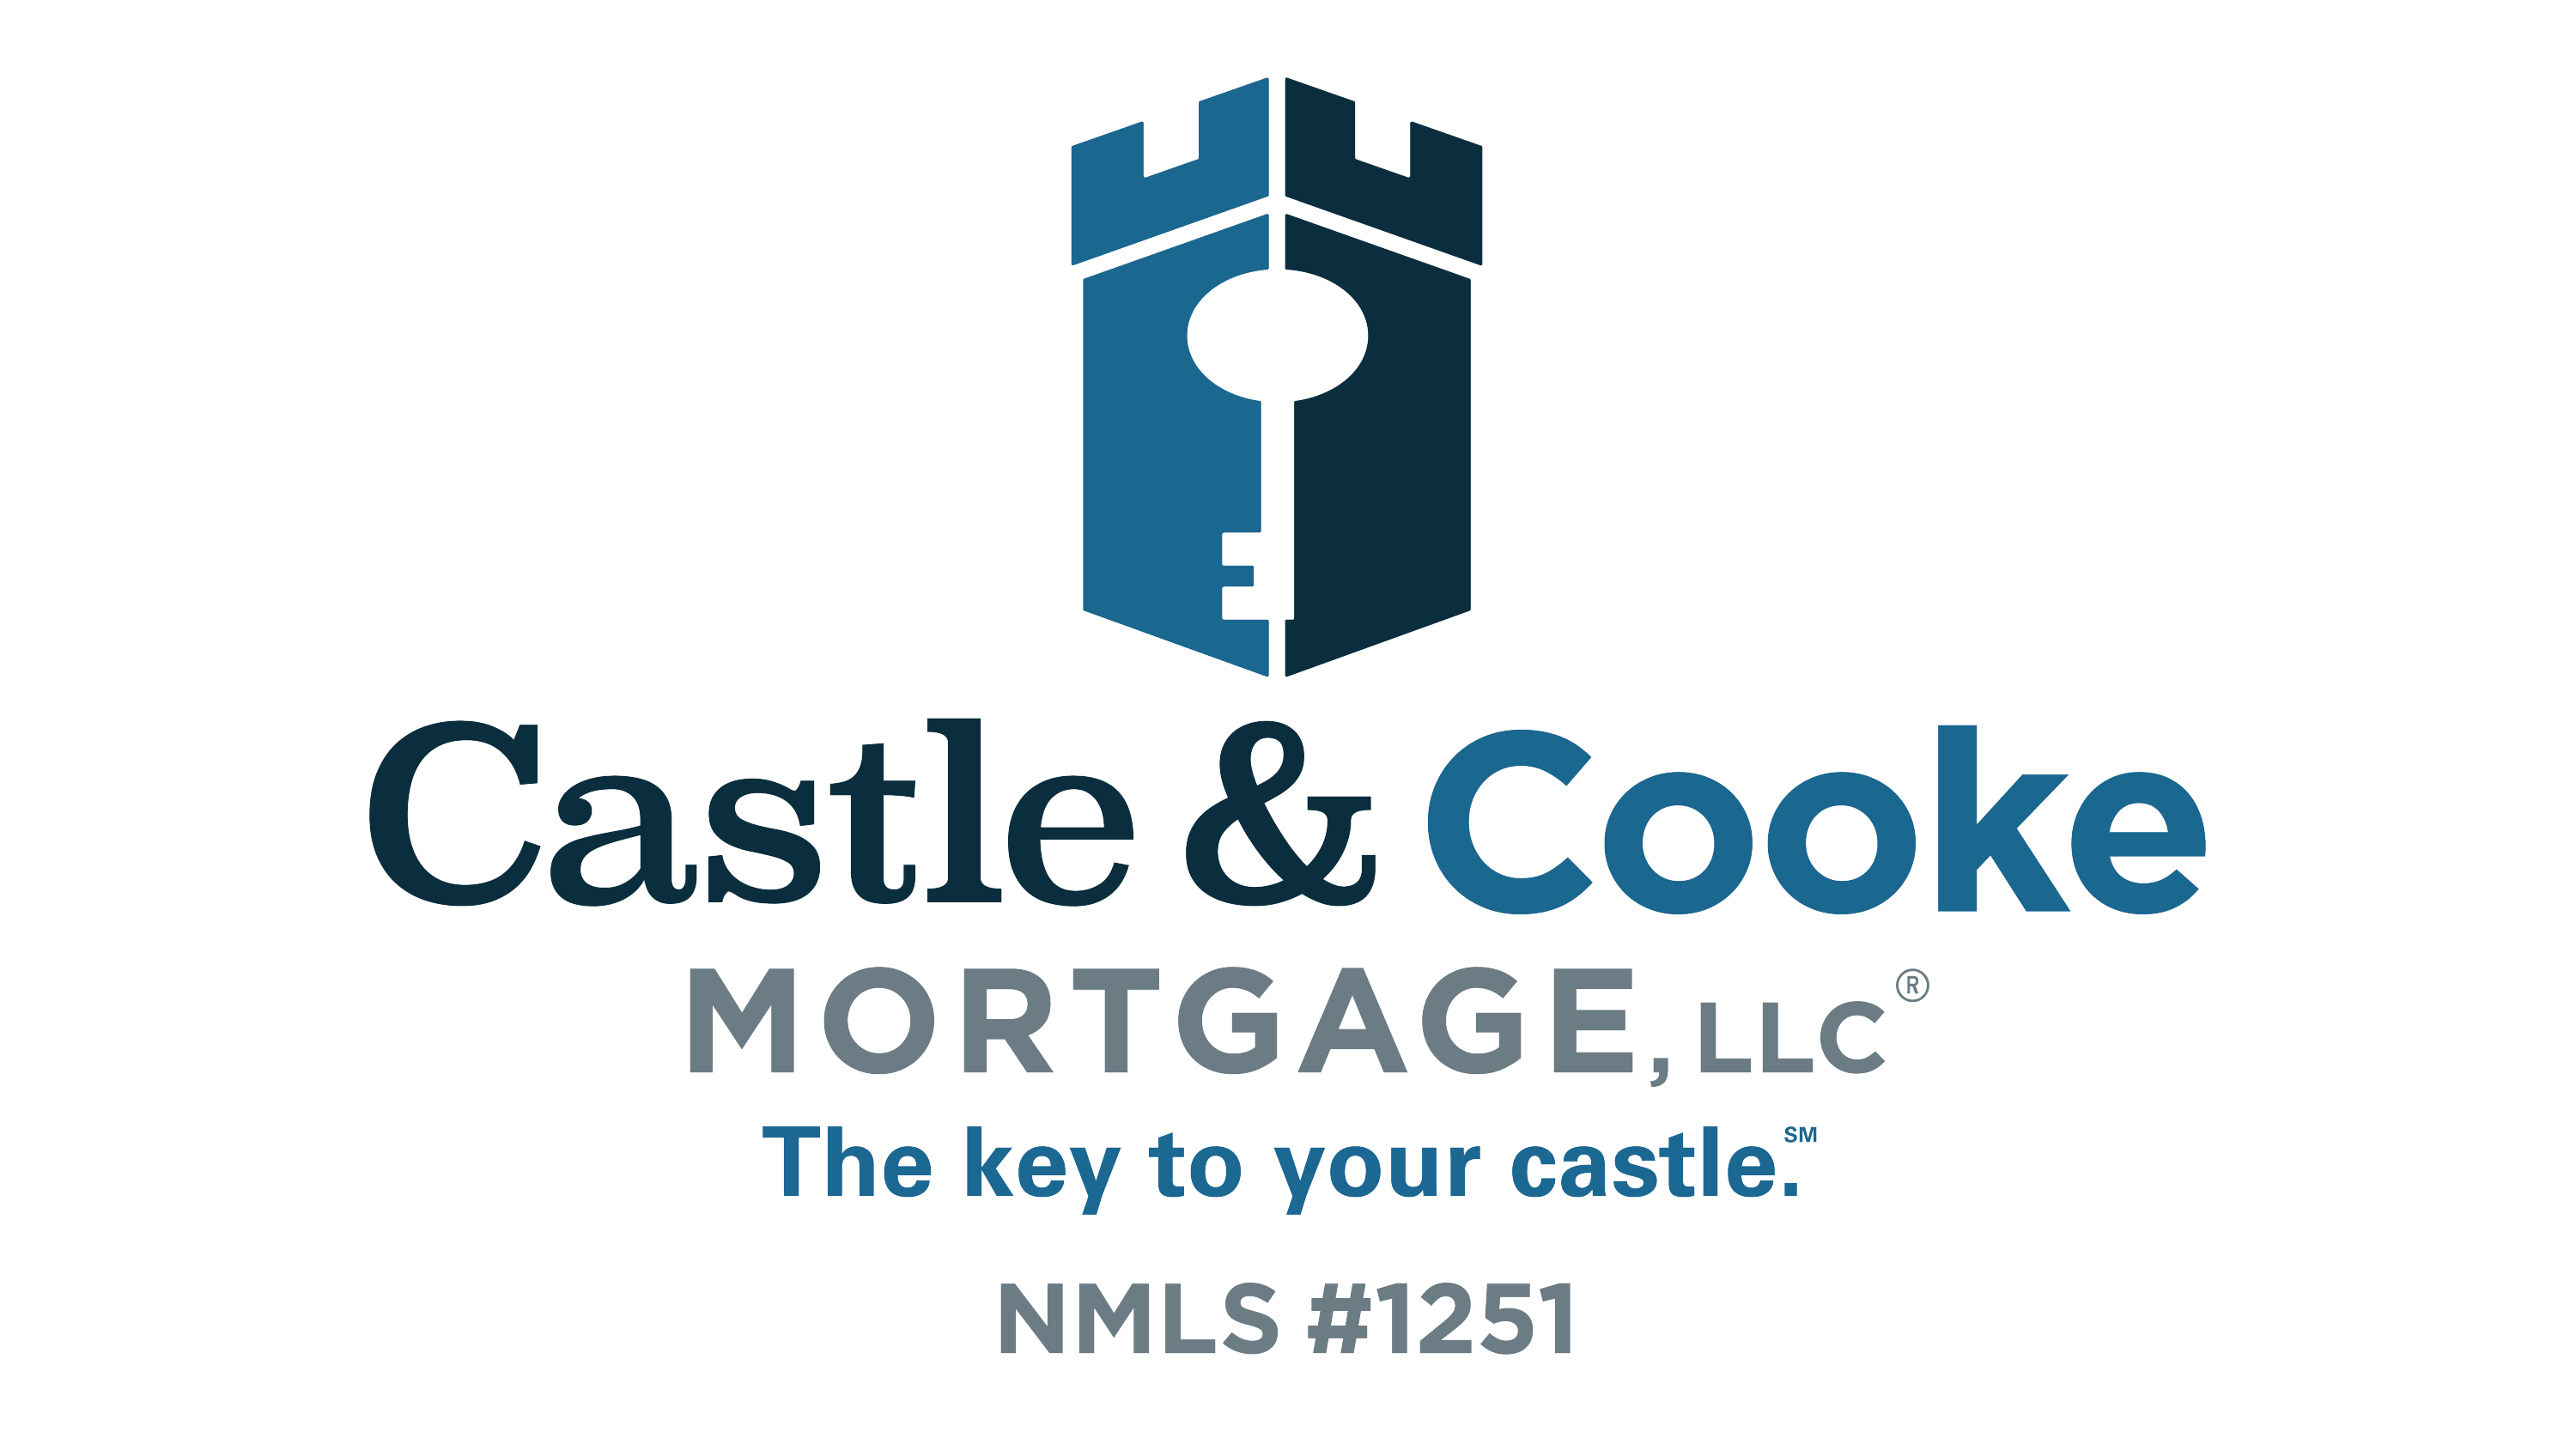 Suzi Boyle with Castle & Cooke Mortgage